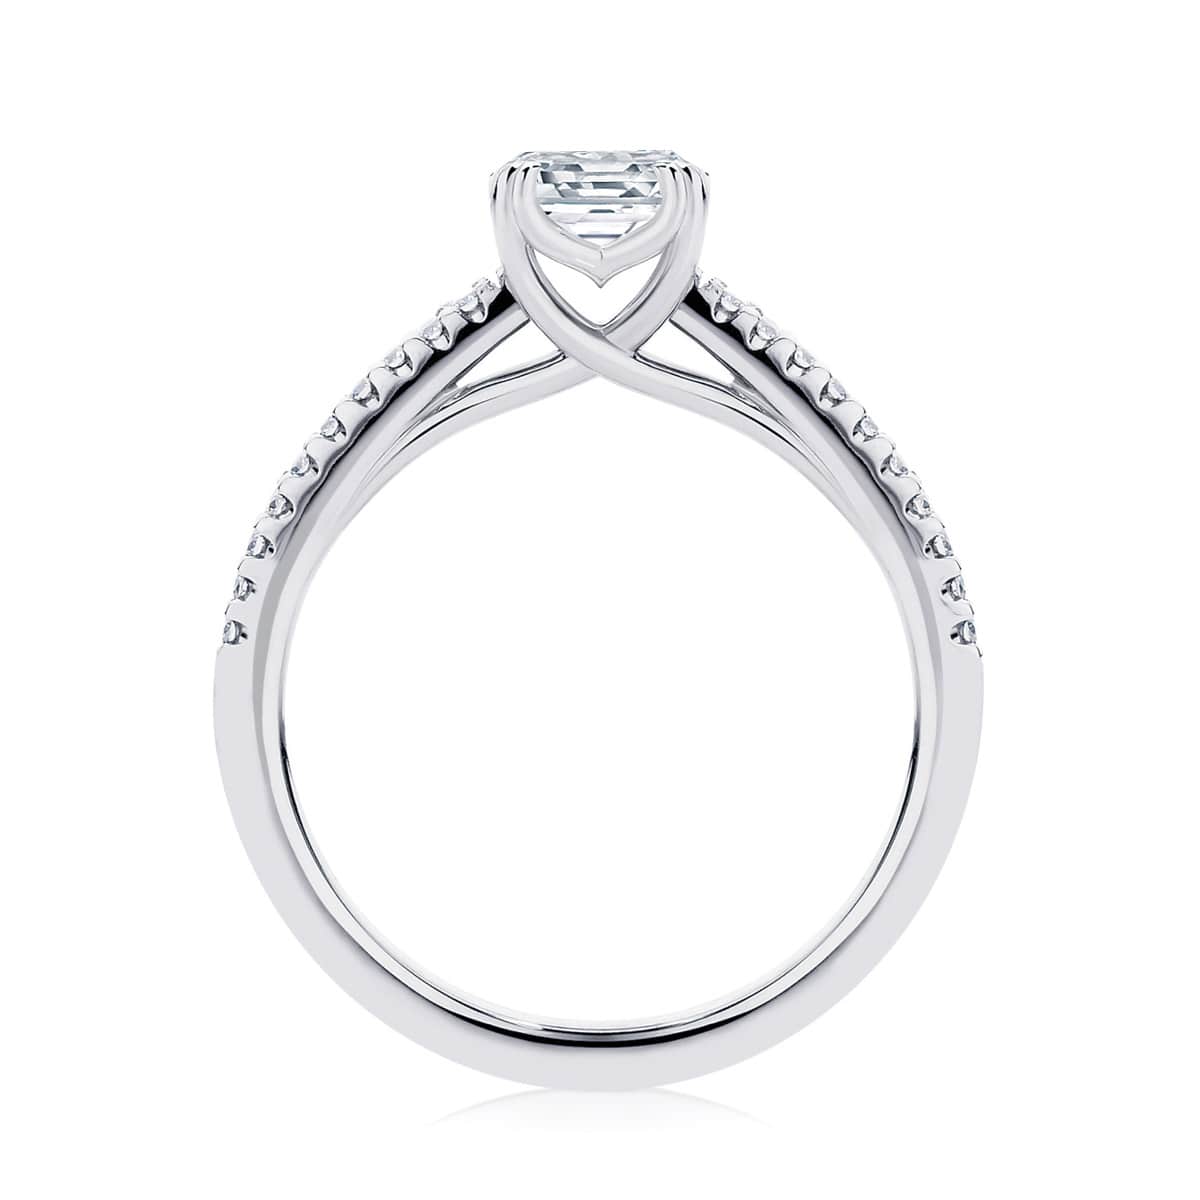 Emerald Diamond with Side Stones Ring in Platinum | Aurelia (Emerald Cut)